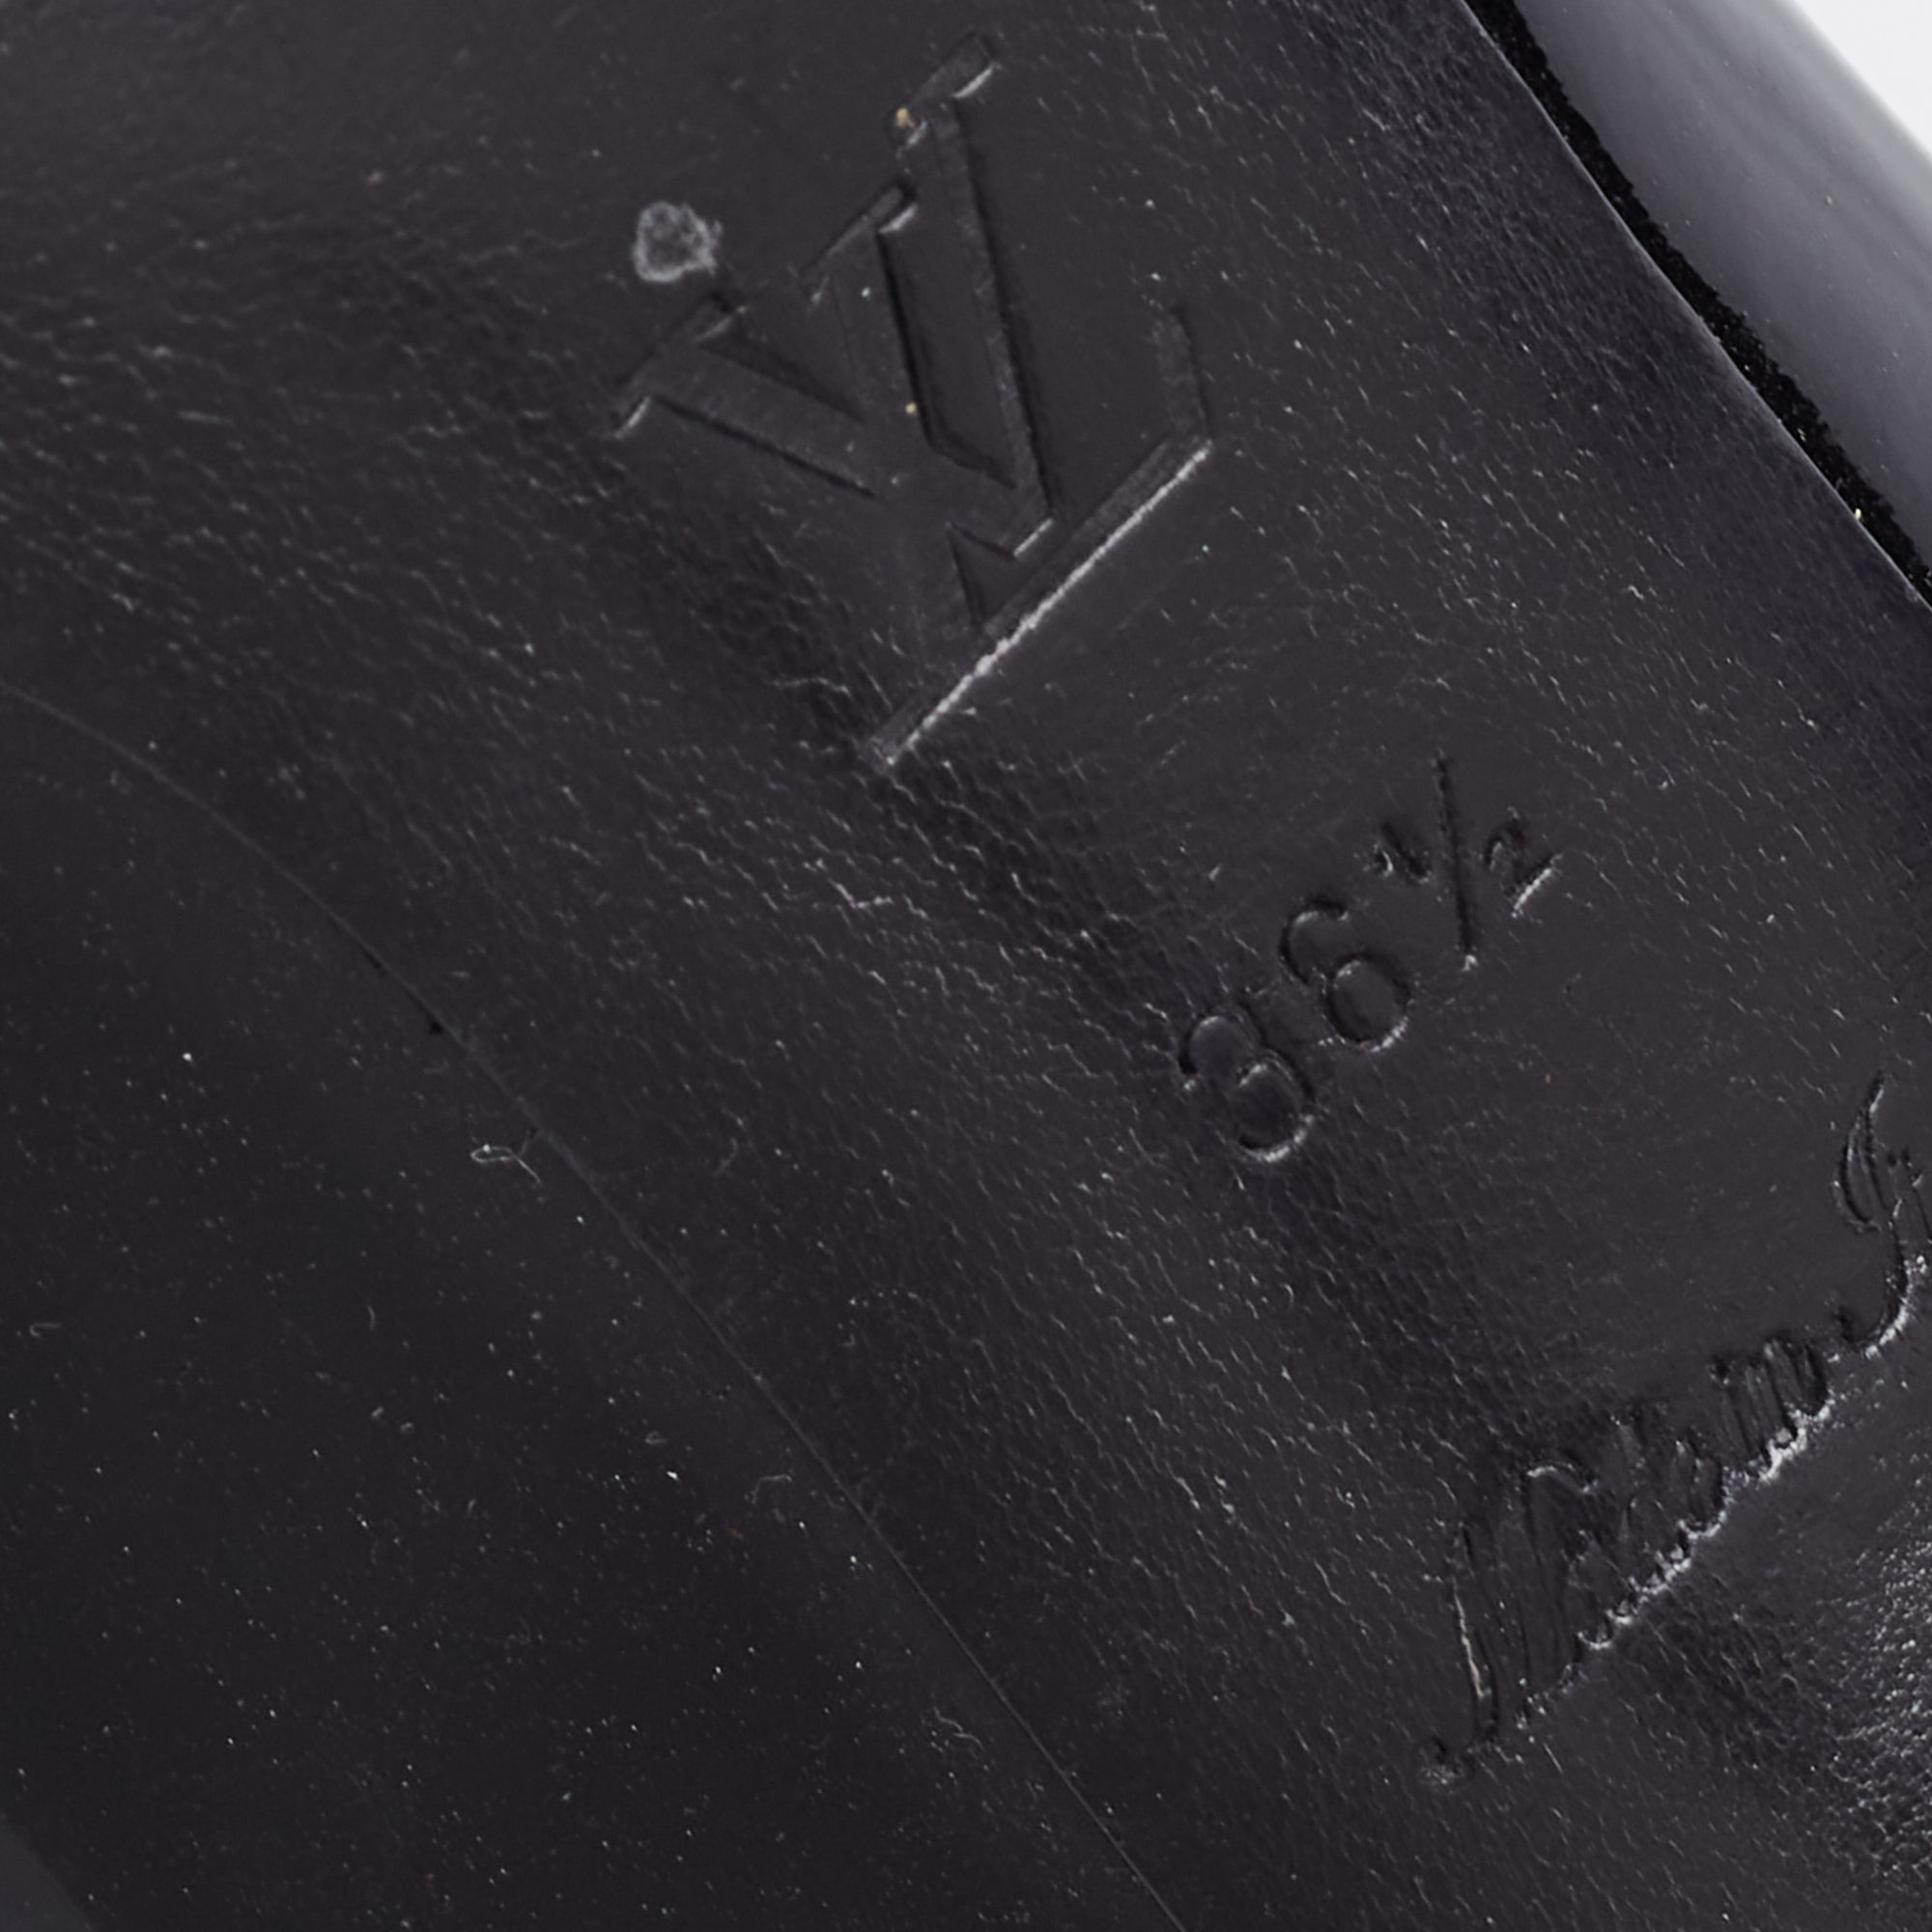 Louis Vuitton Black Patent Leather Fiance Pumps Size 36.5